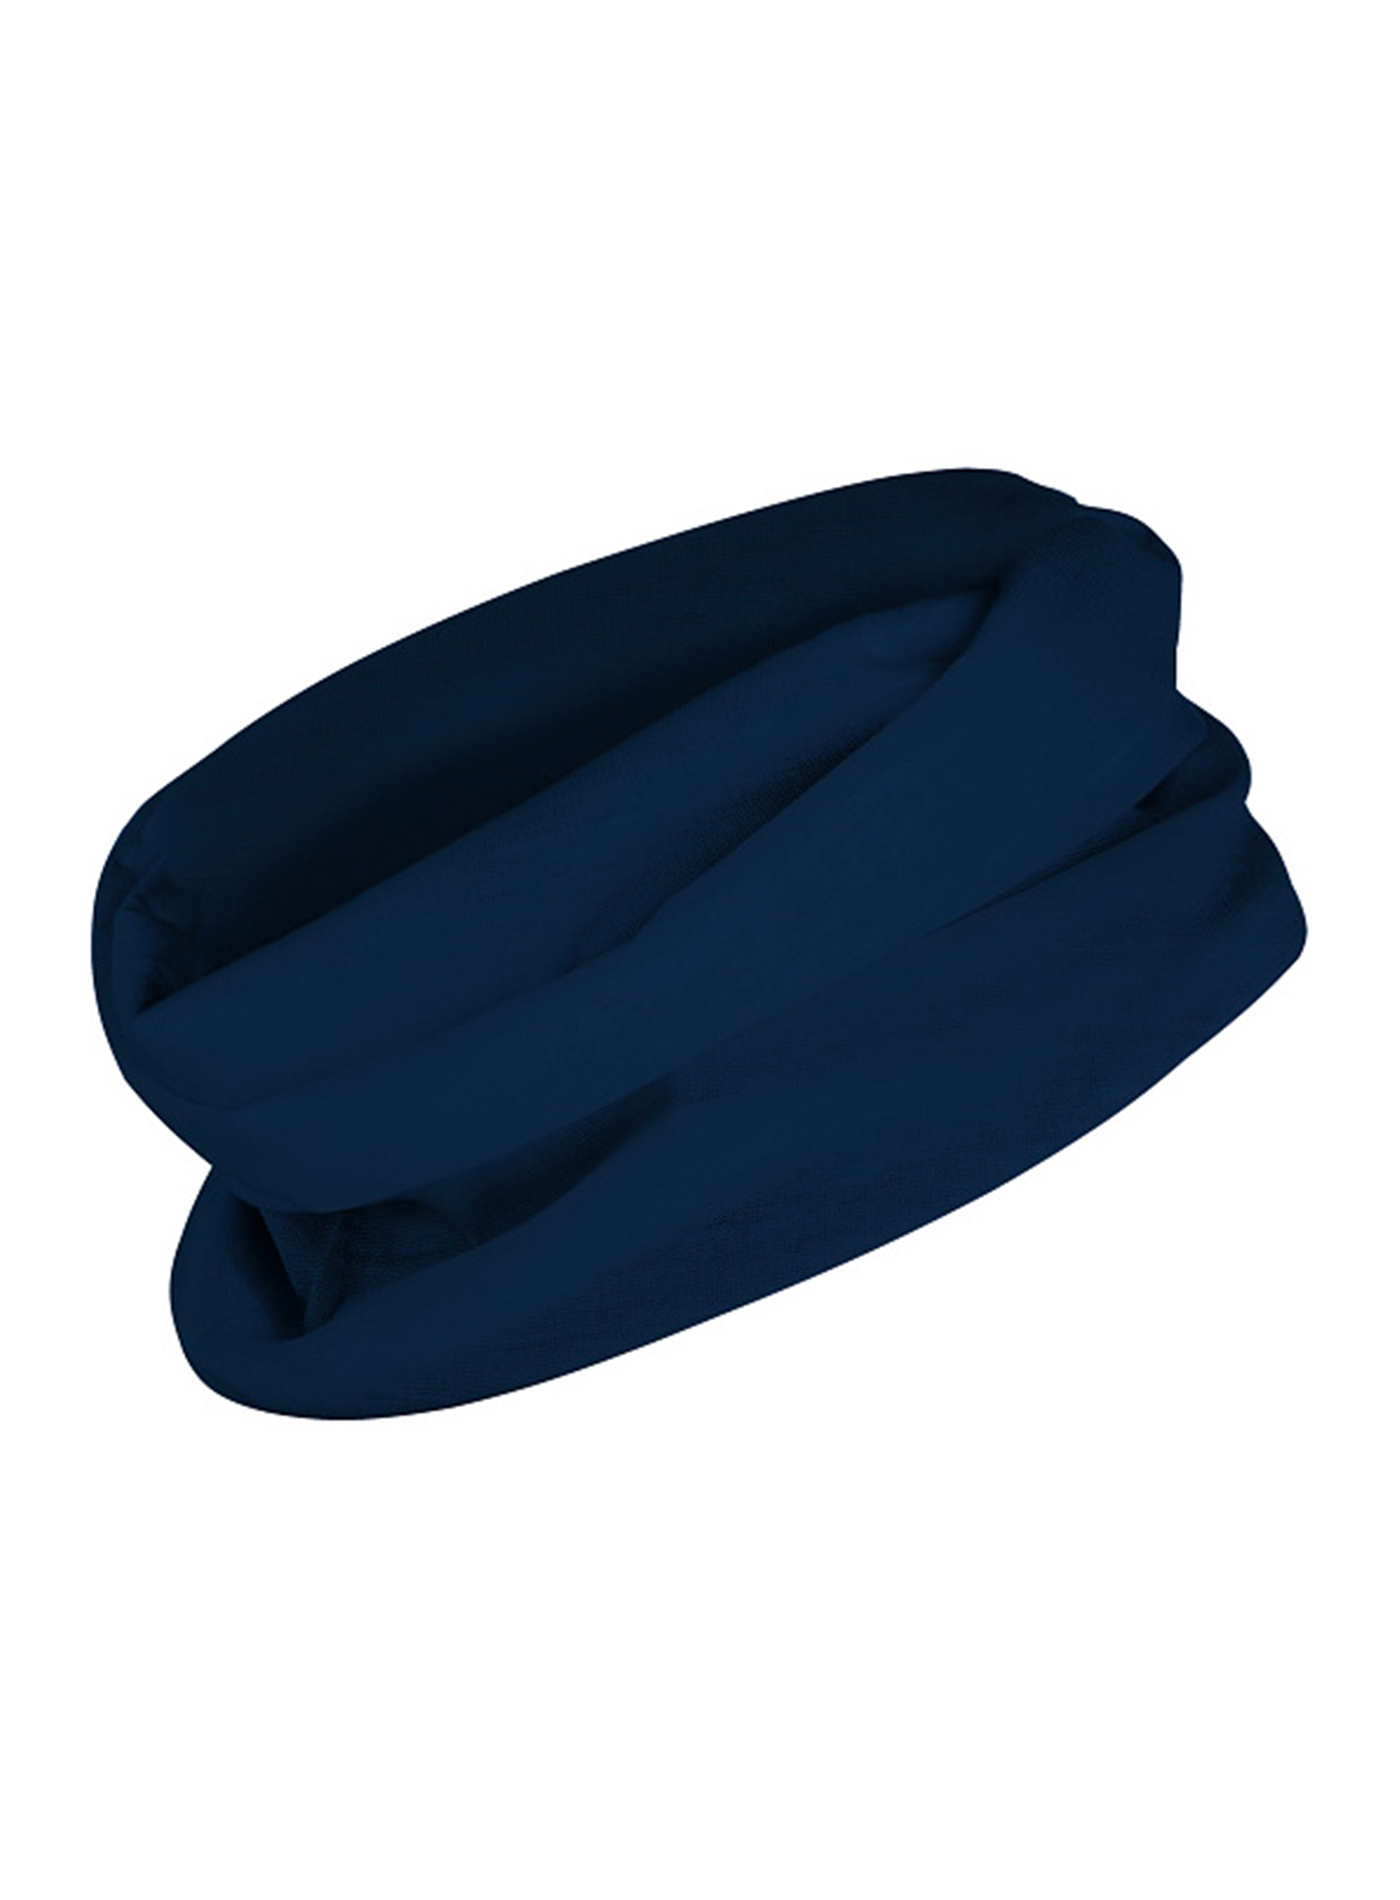 Multifunkční šátek/rouška Roly - Temně modrá univerzal